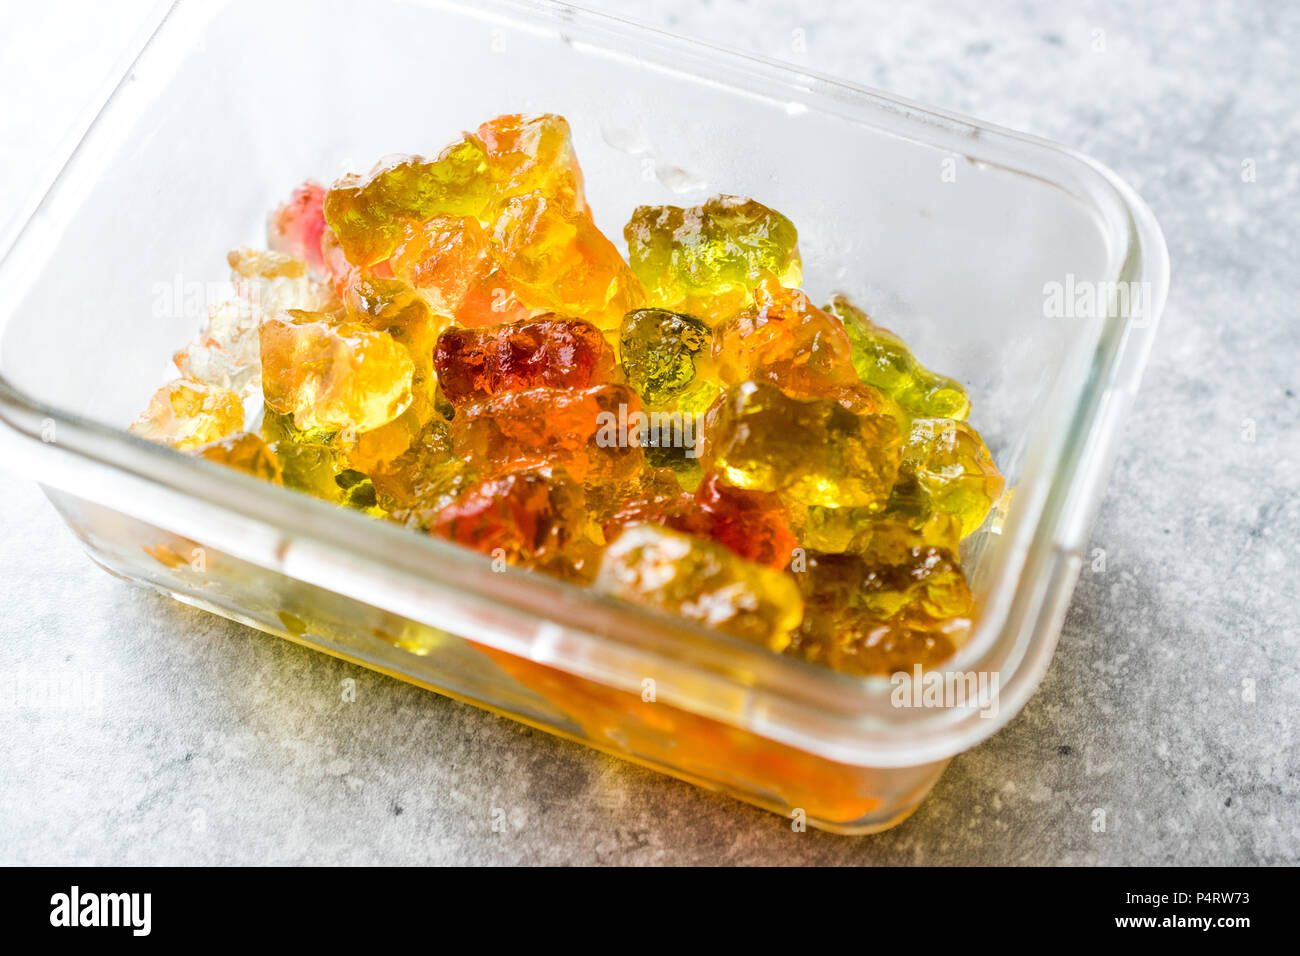 Gummibärchen mit Wodka im Glas Schüssel. Alkoholische Süsswaren Essen  Stockfotografie - Alamy